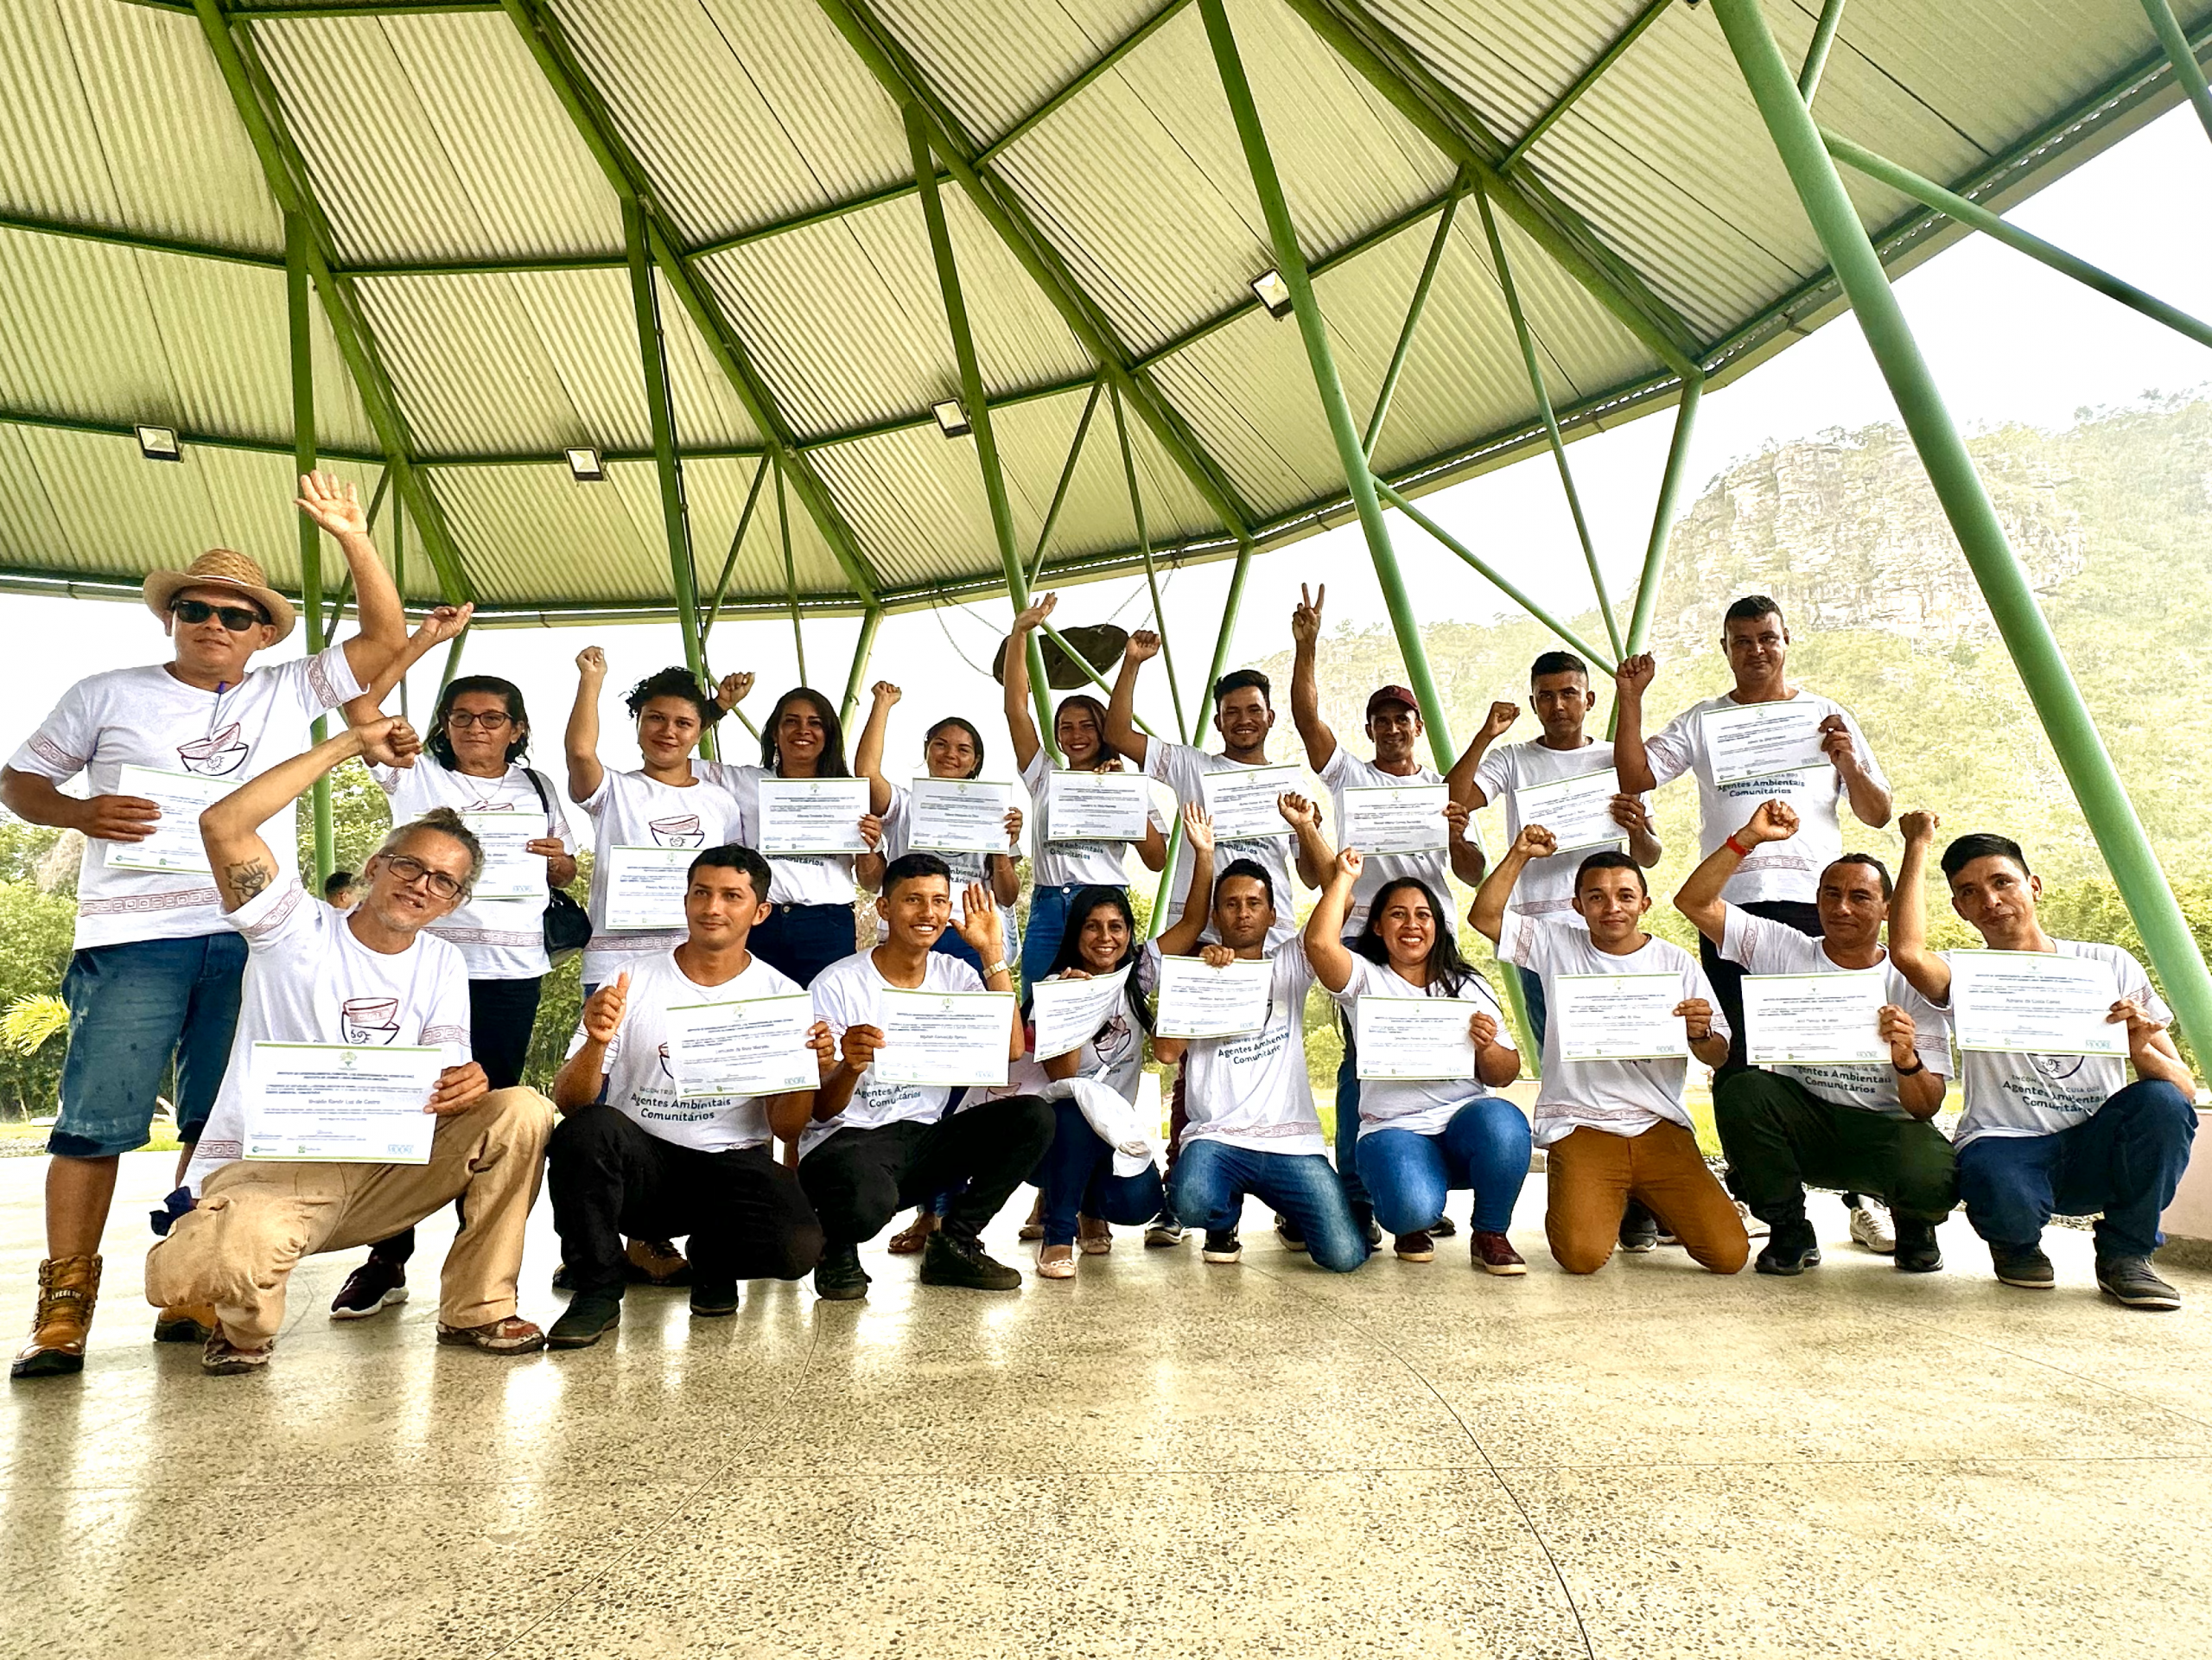 Formatura - Áreas protegidas do Pará ganham novos agentes ambientais comunitários